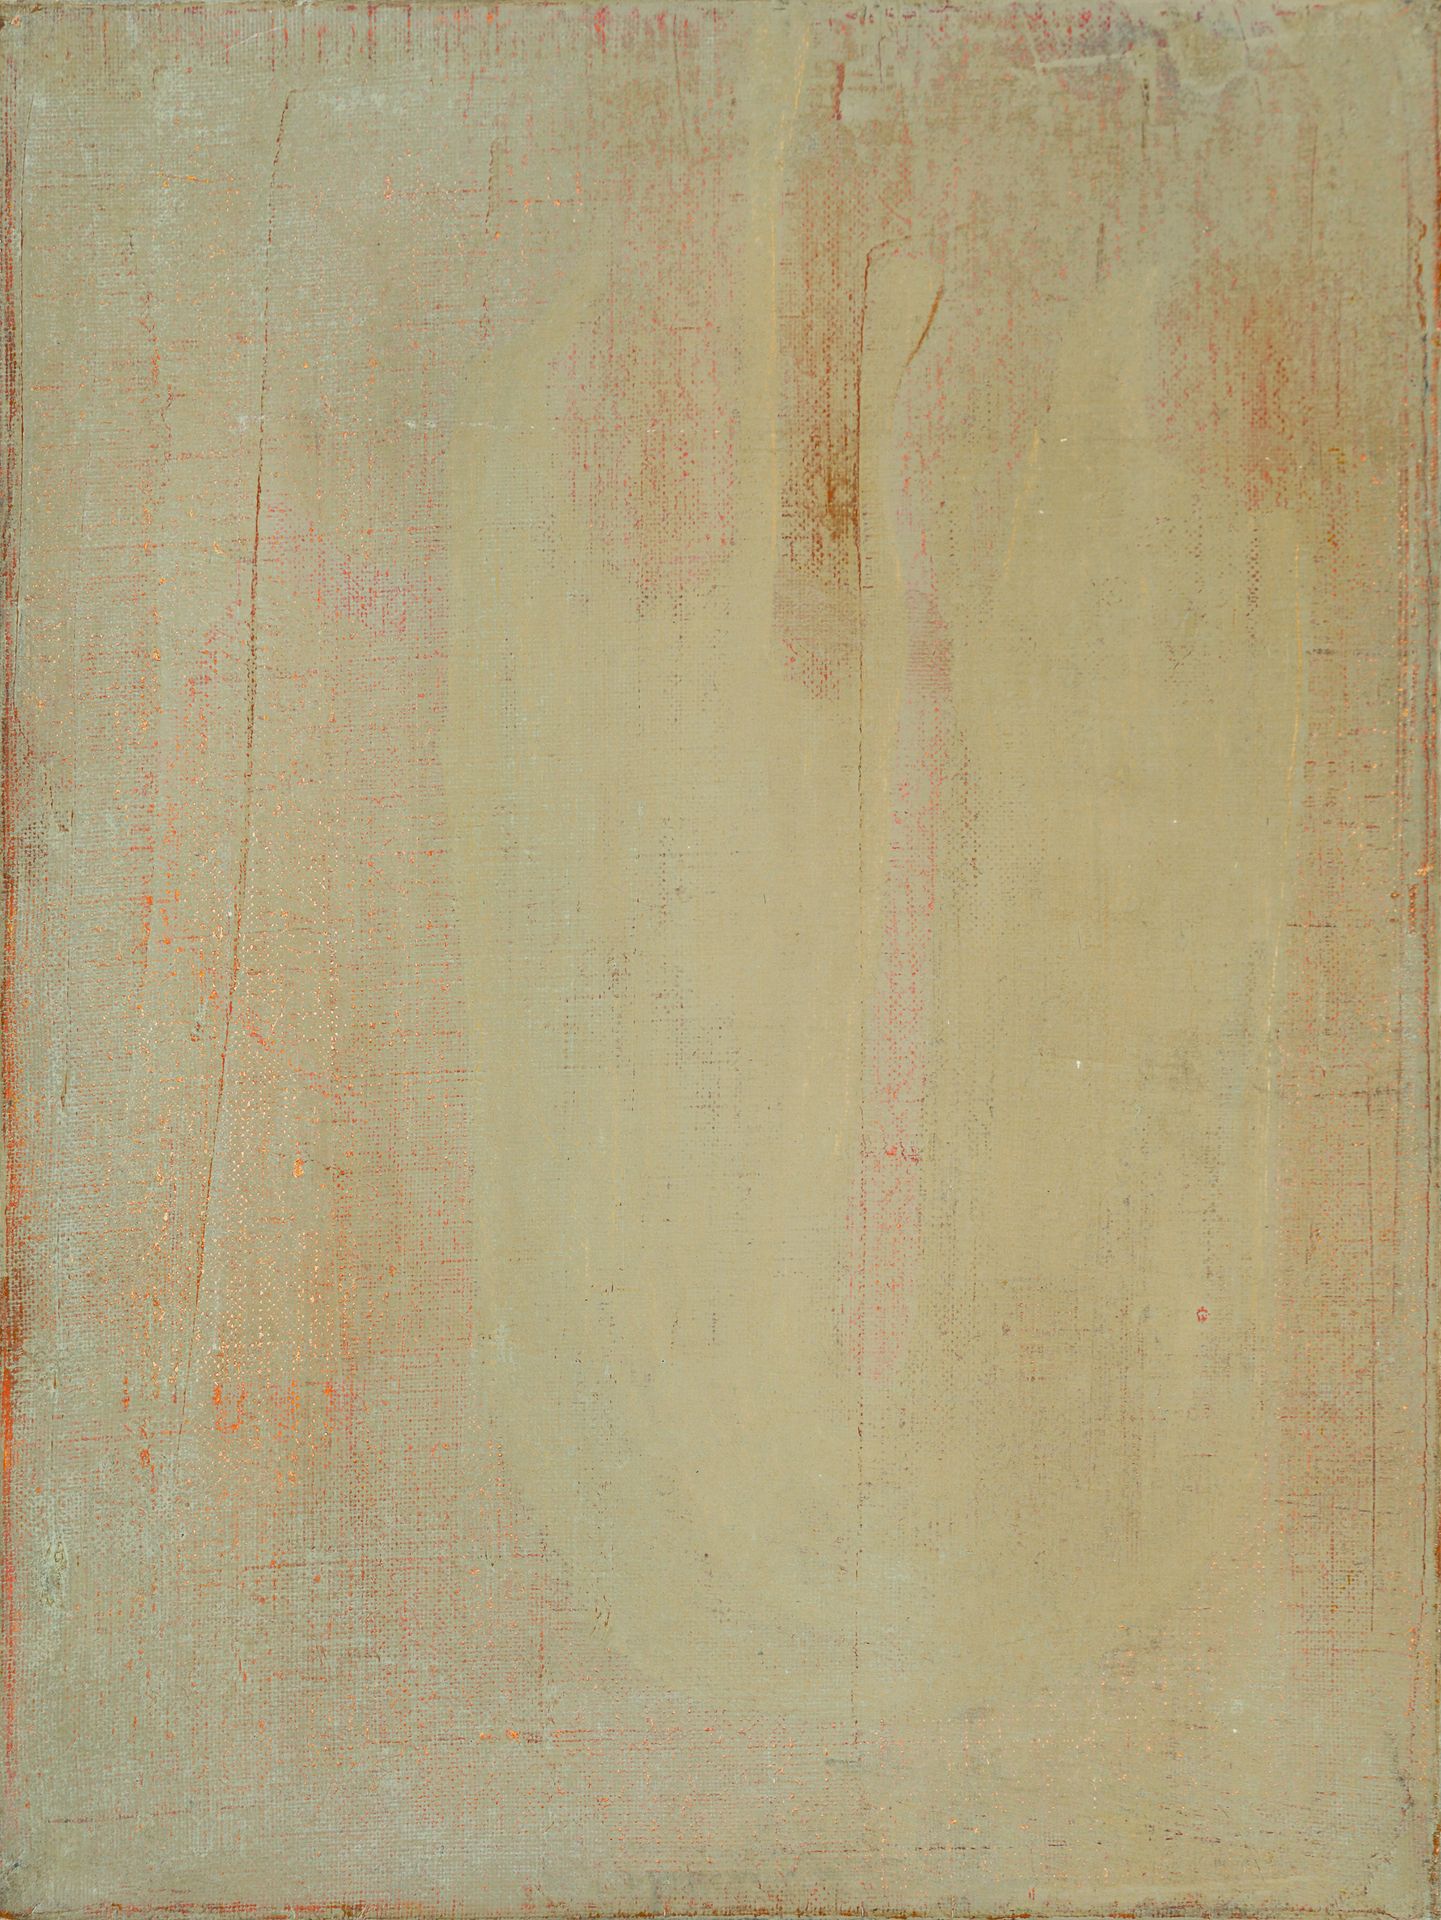 Bohatsch, Erwin Abstraktion II, 1993
Öl auf Leinwand
Verso signiert und datiert
&hellip;